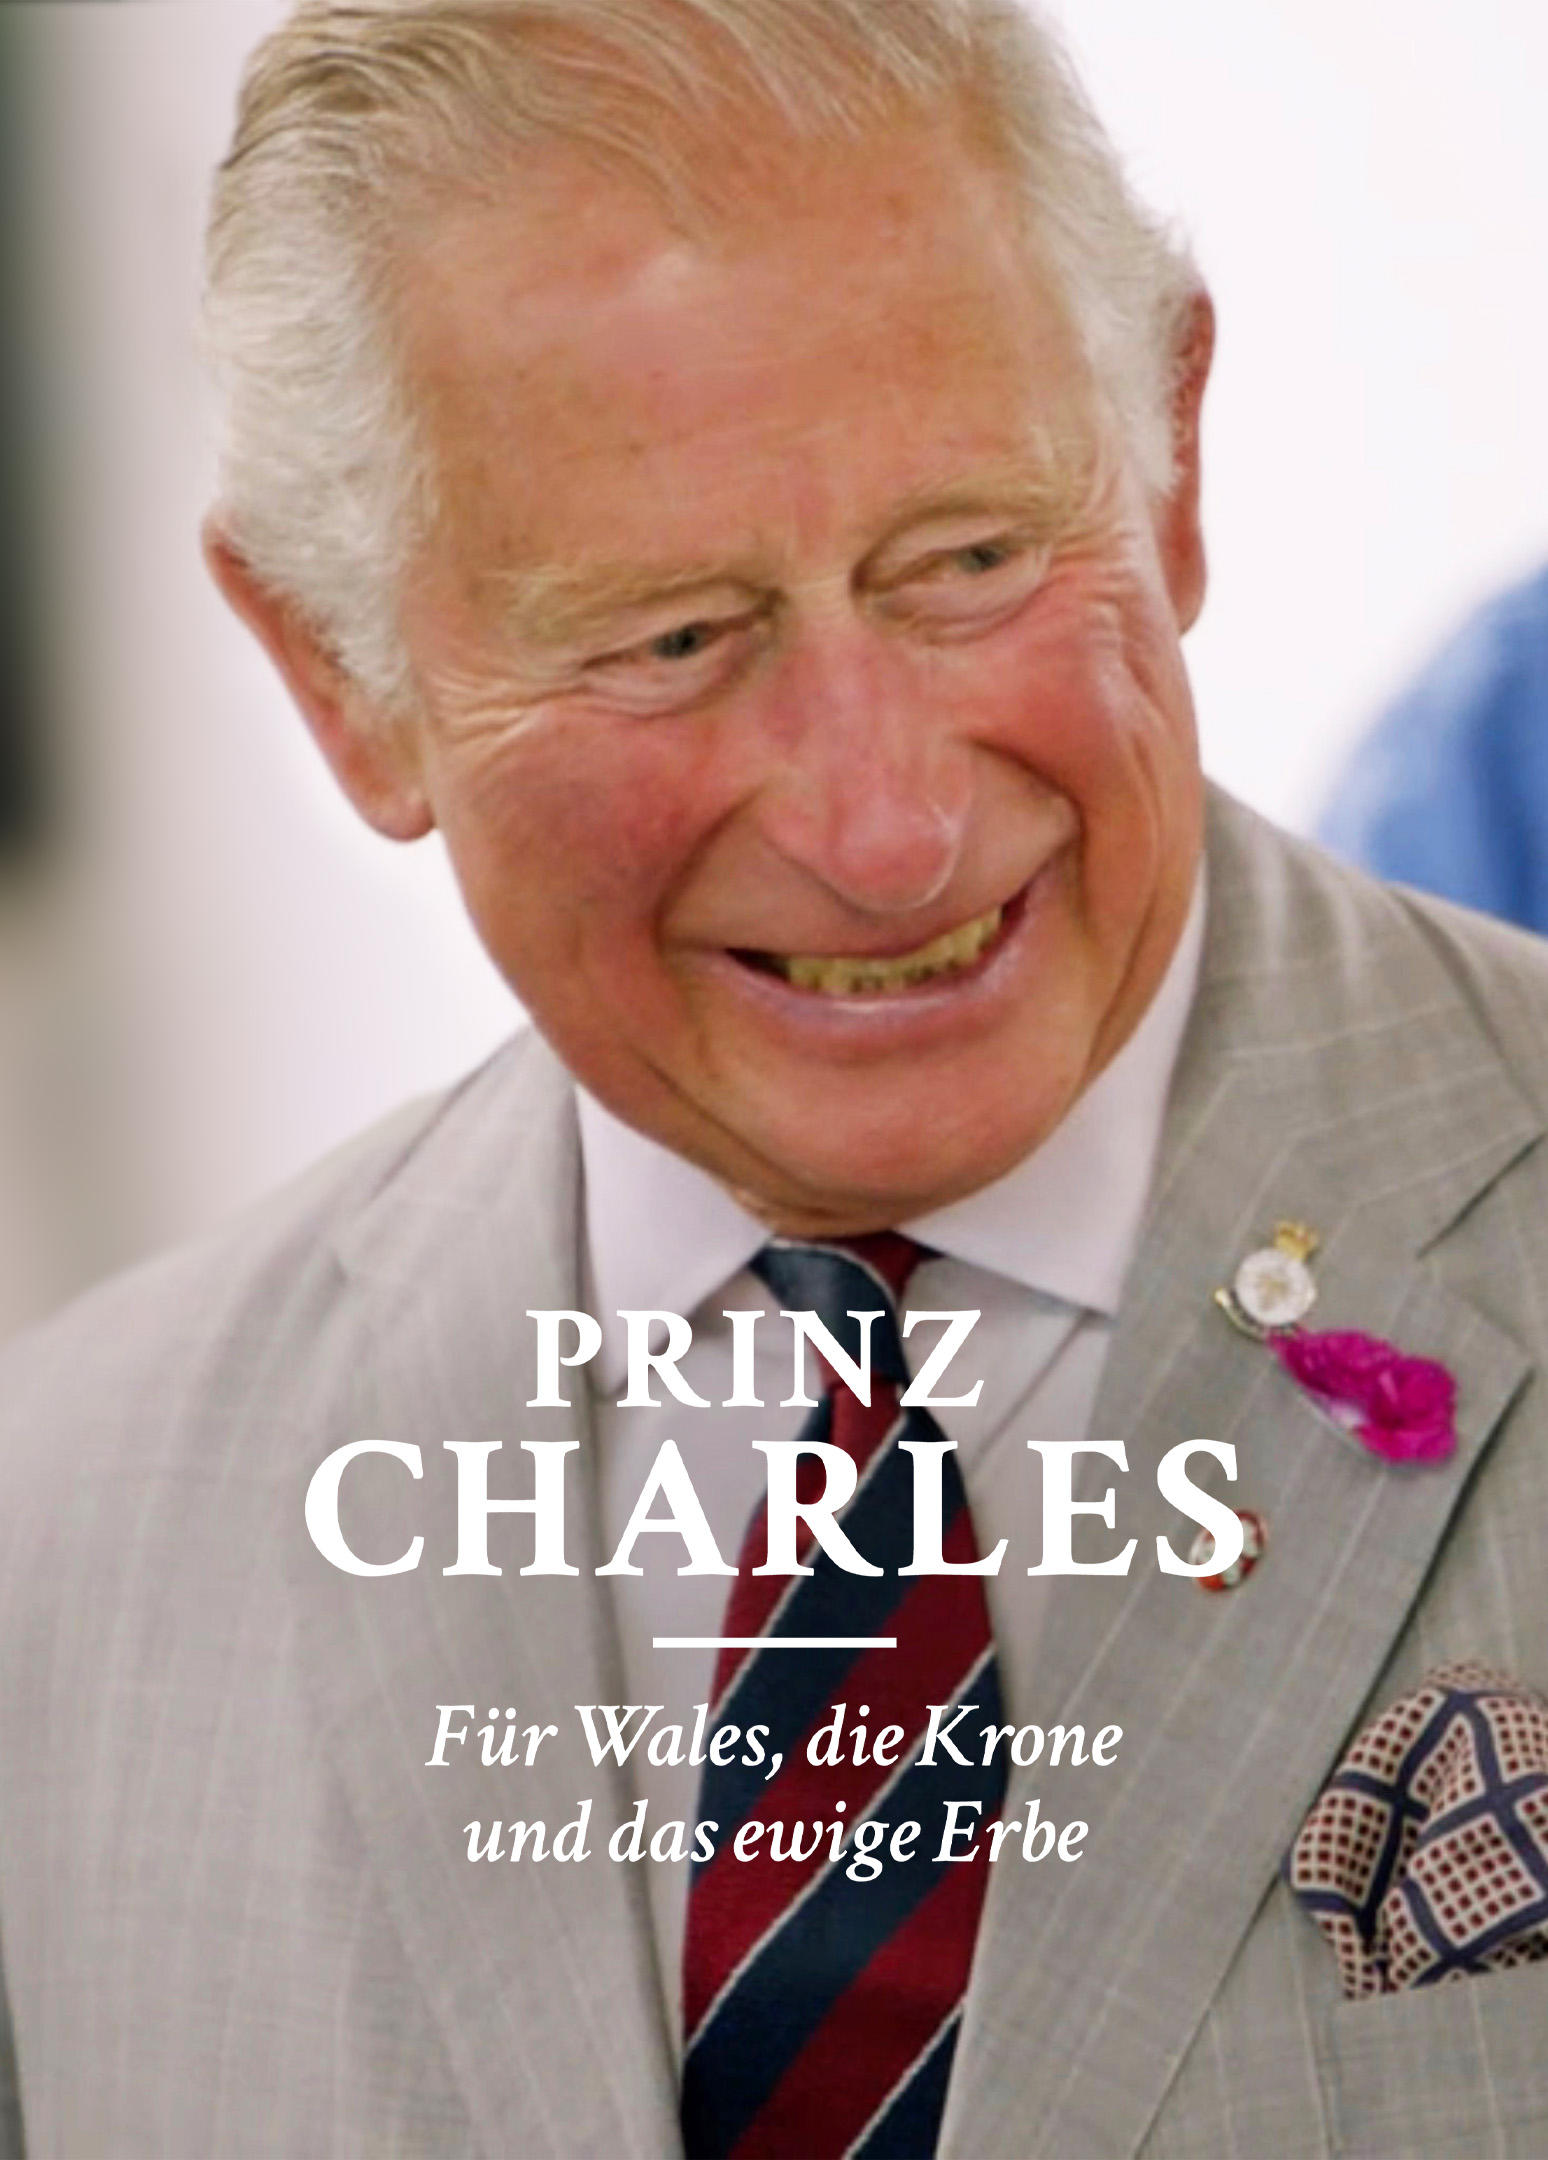 Prinz Charles - Für Wales, die Krone und das ewige Erbe